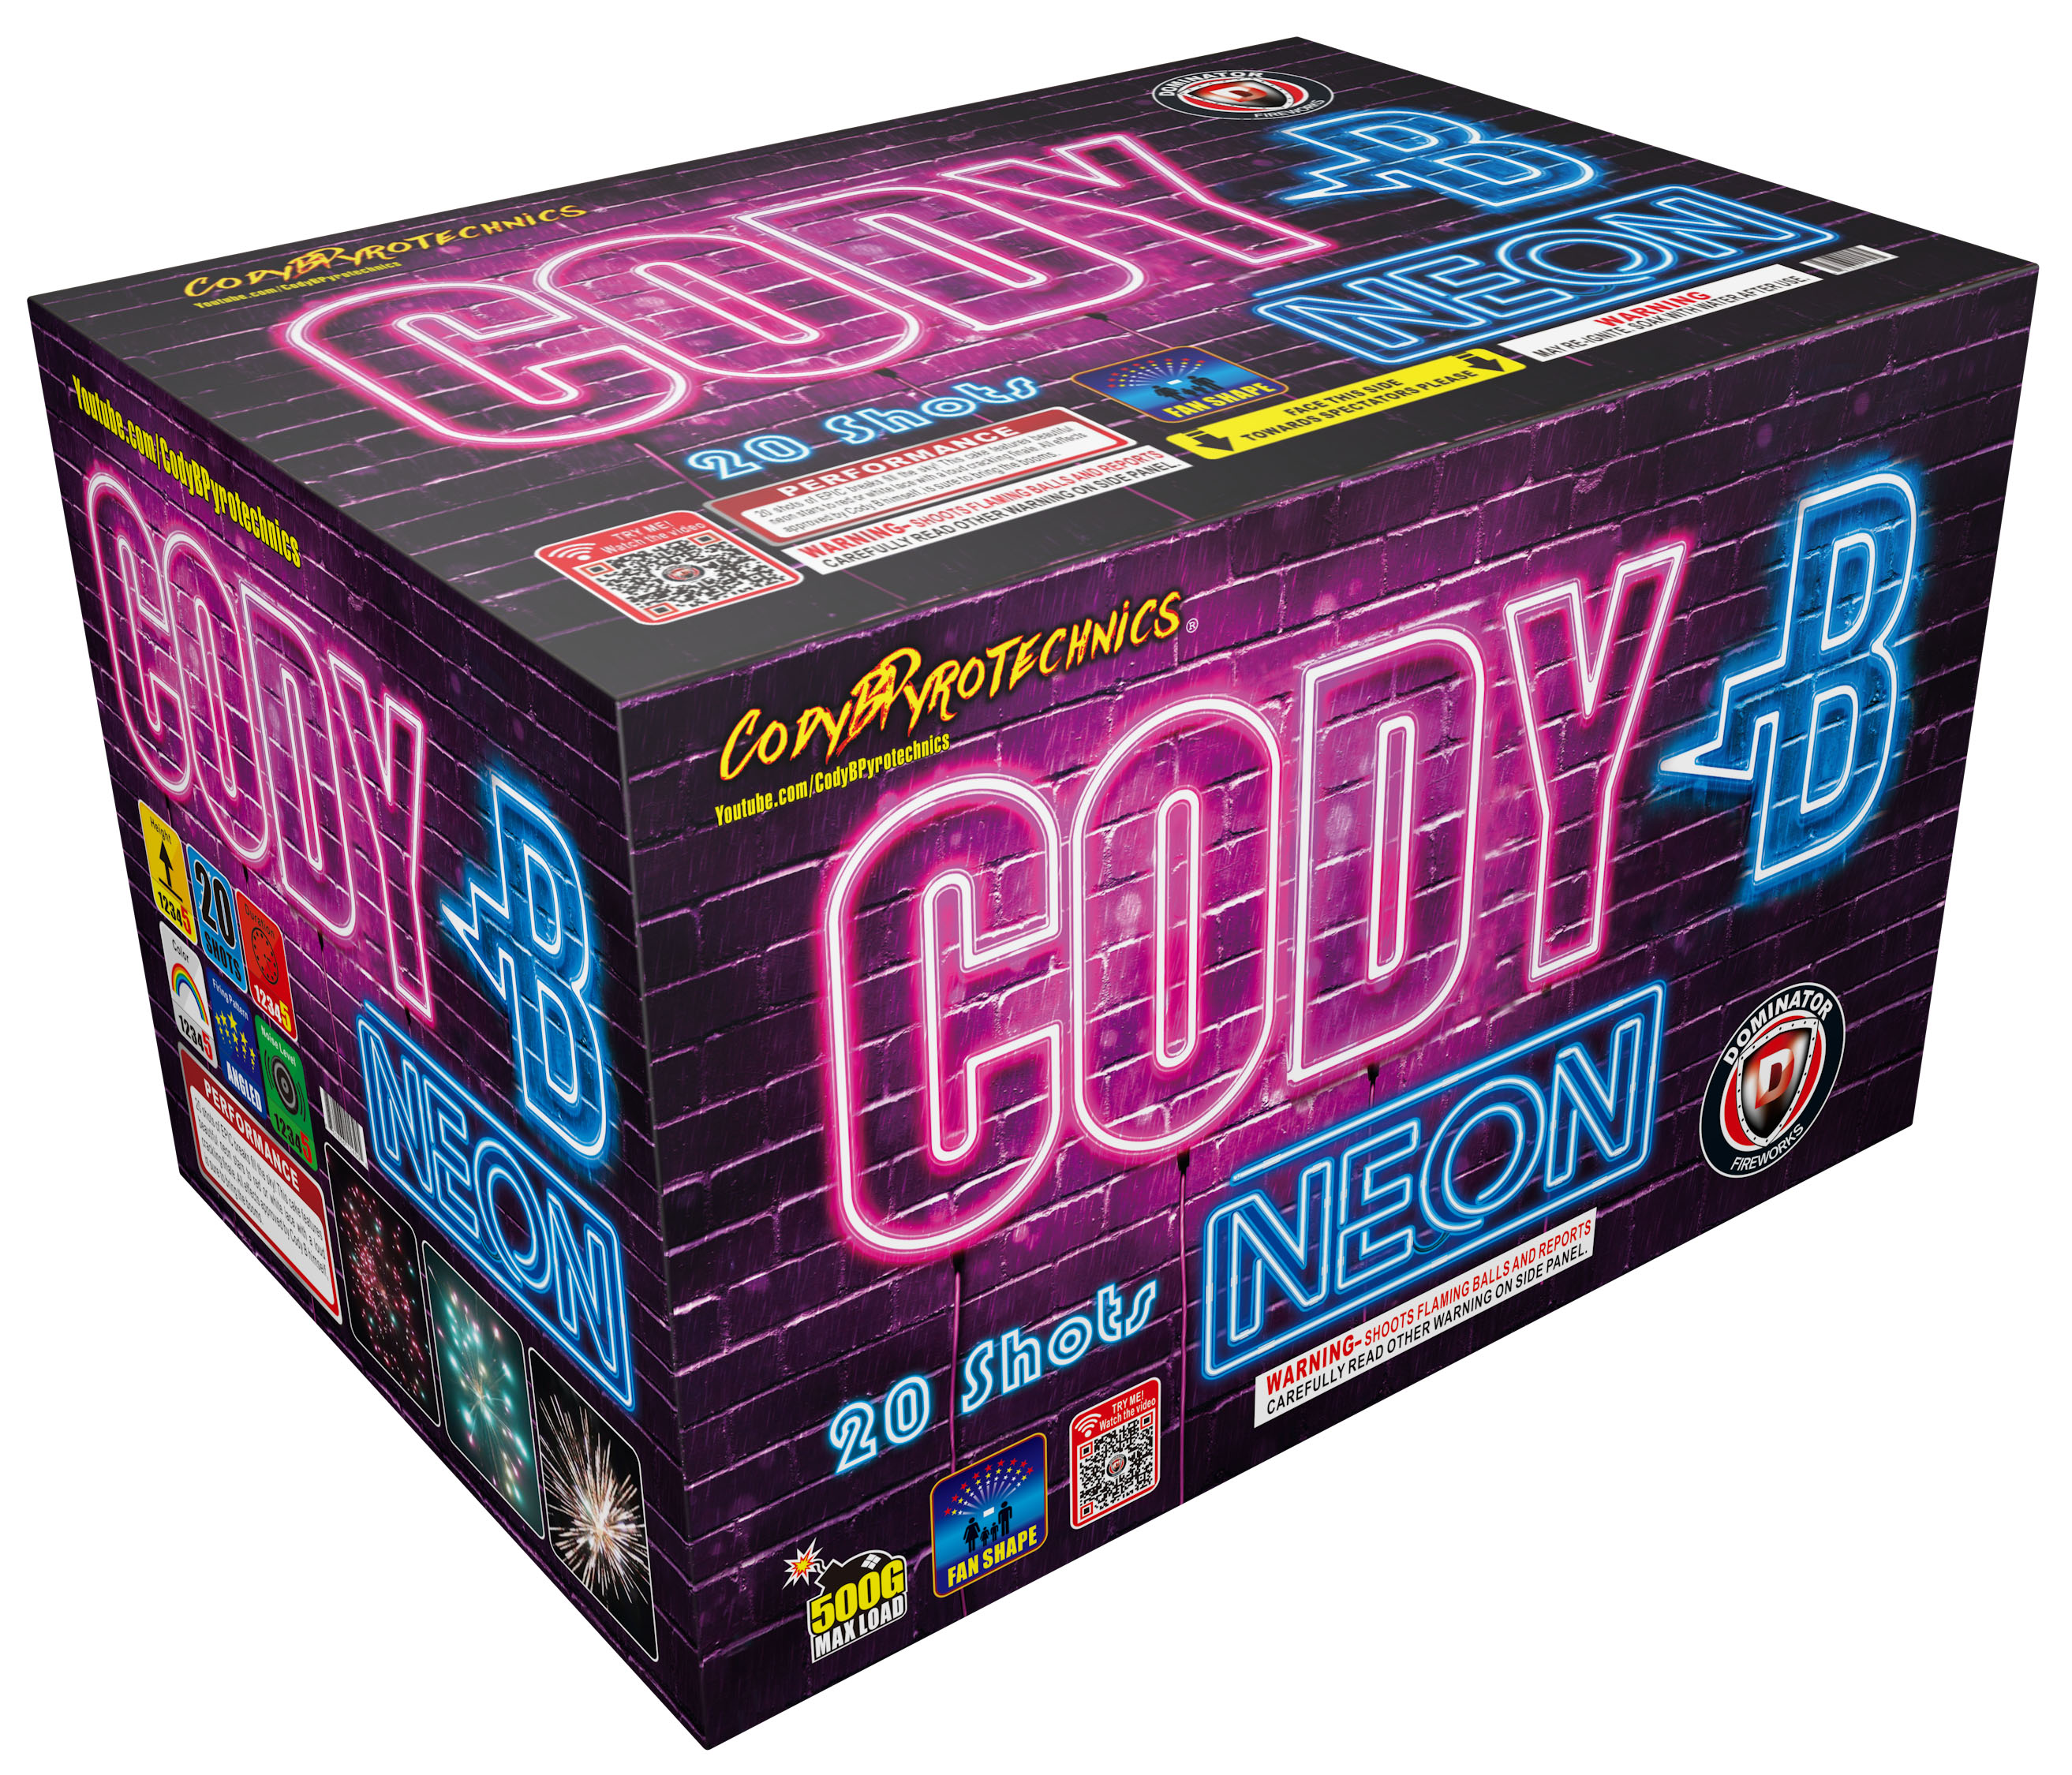 CodyB Neon